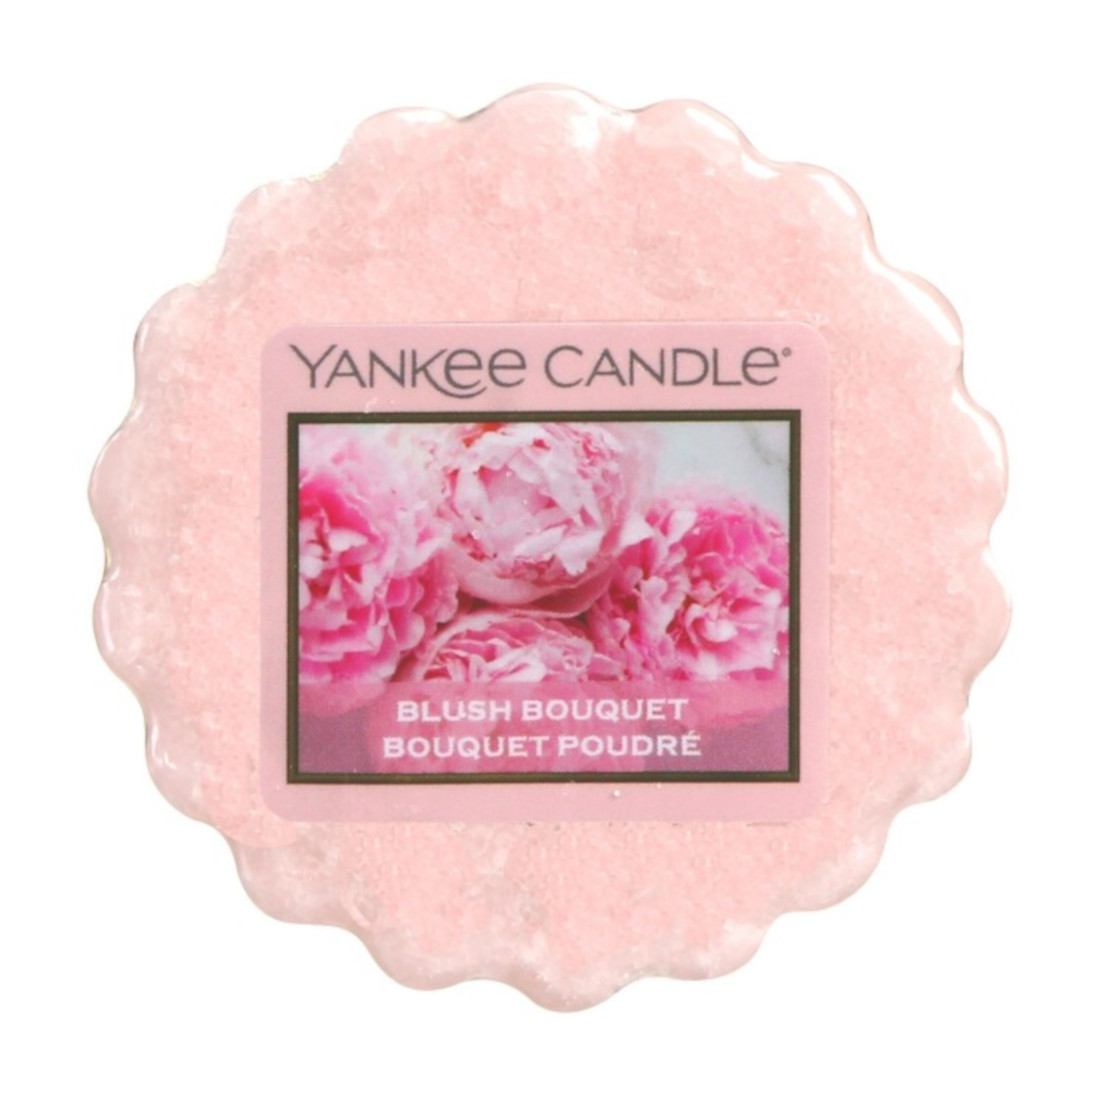 Yankee Candle Blush Bouquet Wax Melt Tart